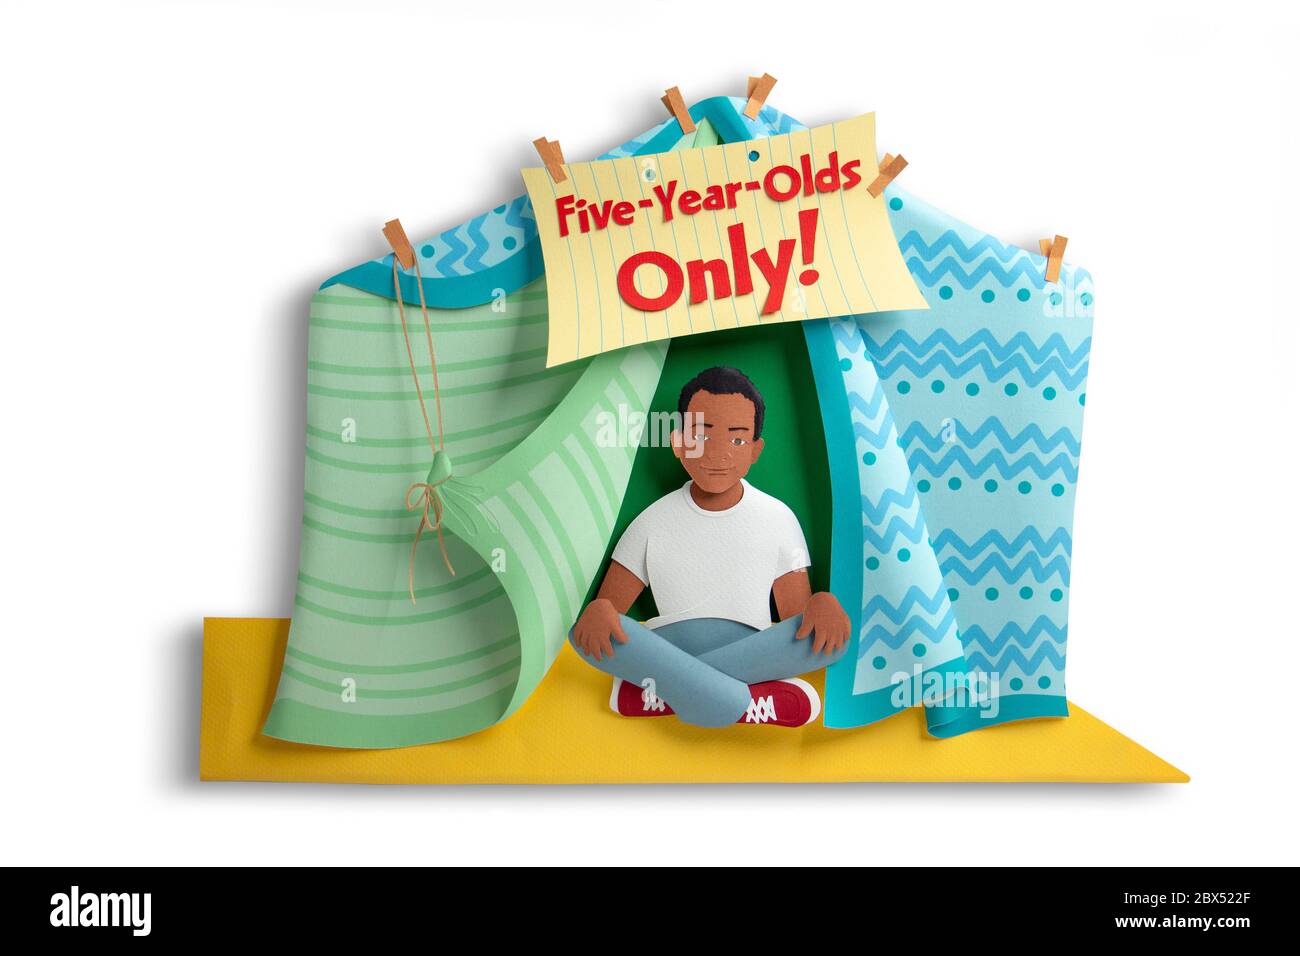 Ilustración de papel 3D por Gail Armstrong. Un niño afroamericano se sienta en una tienda de mantas y sillas Foto de stock